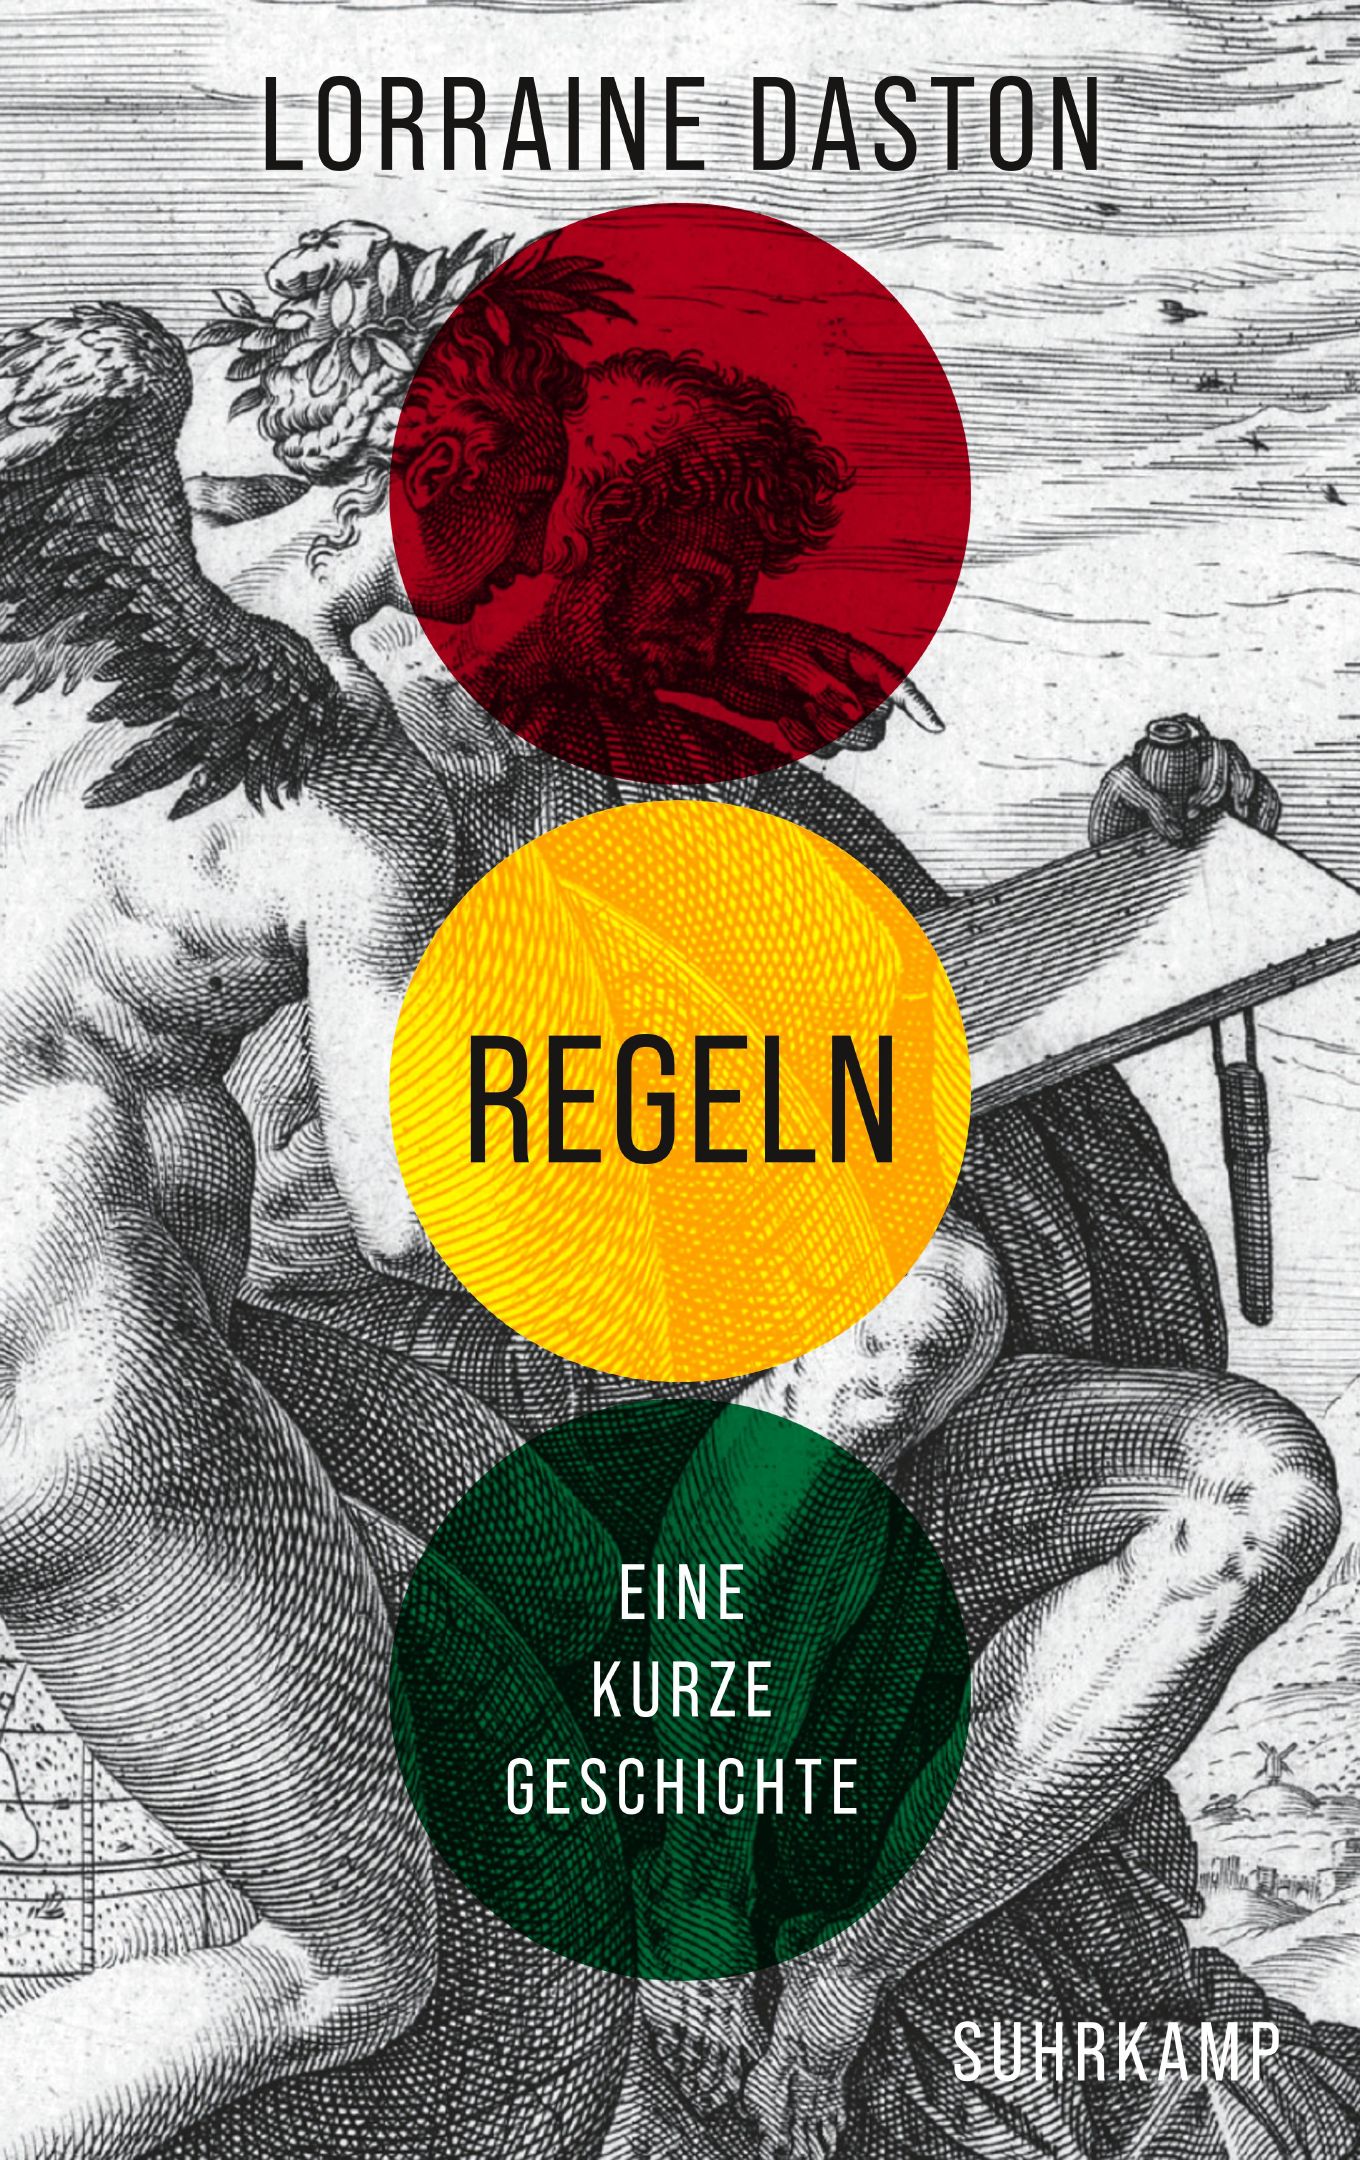 book cover: Lorraine Daston: Regeln. Eine kurze Geschichte (2023)